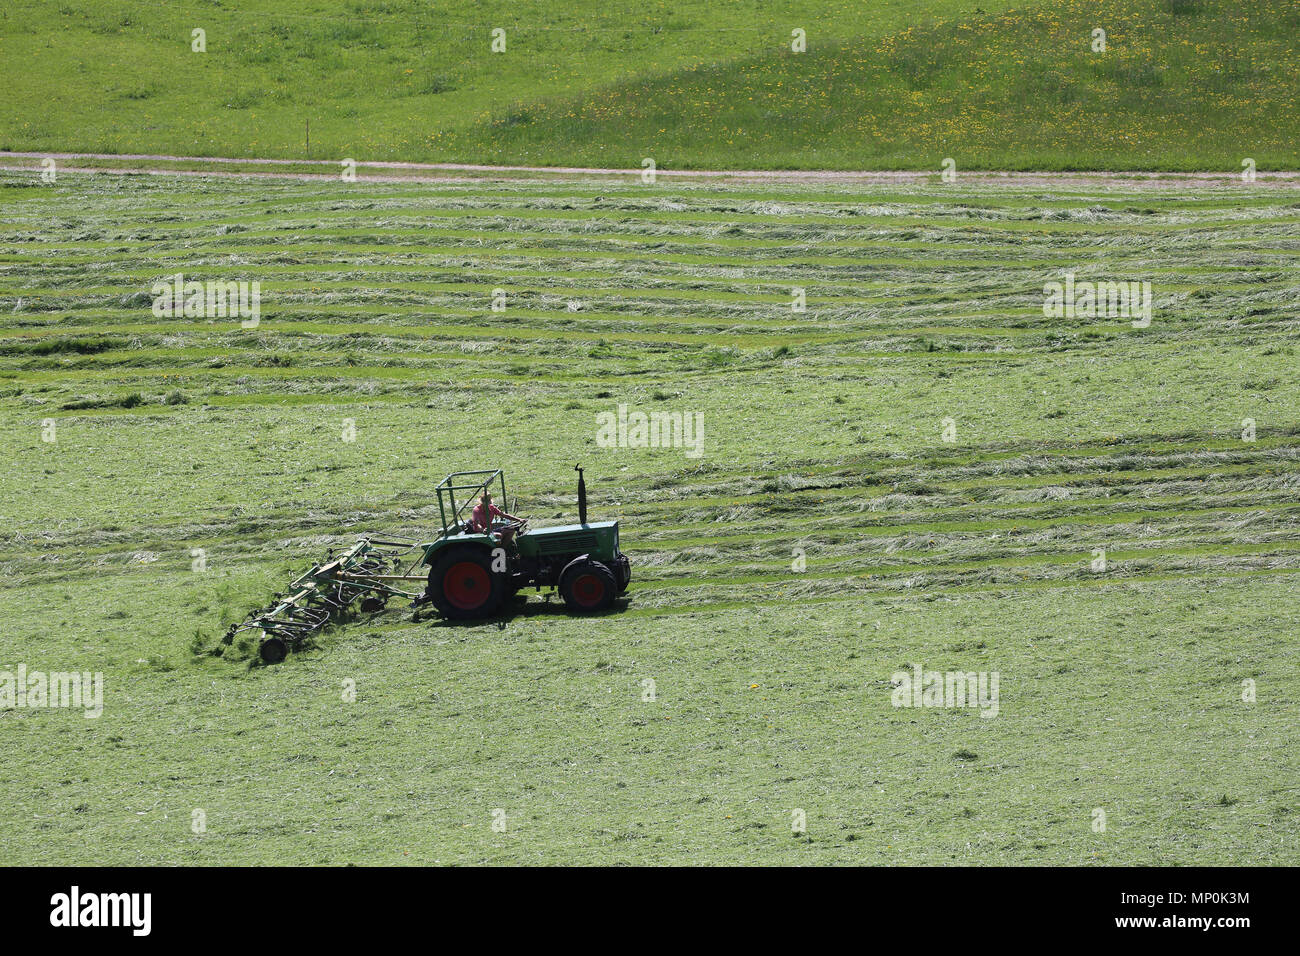 Gli agricoltori il raccolto di un campo con l'aiuto di macchine agricole - Bauern ernten ein feld mit hilfe von landwirtschaftlichen Maschinen Foto Stock